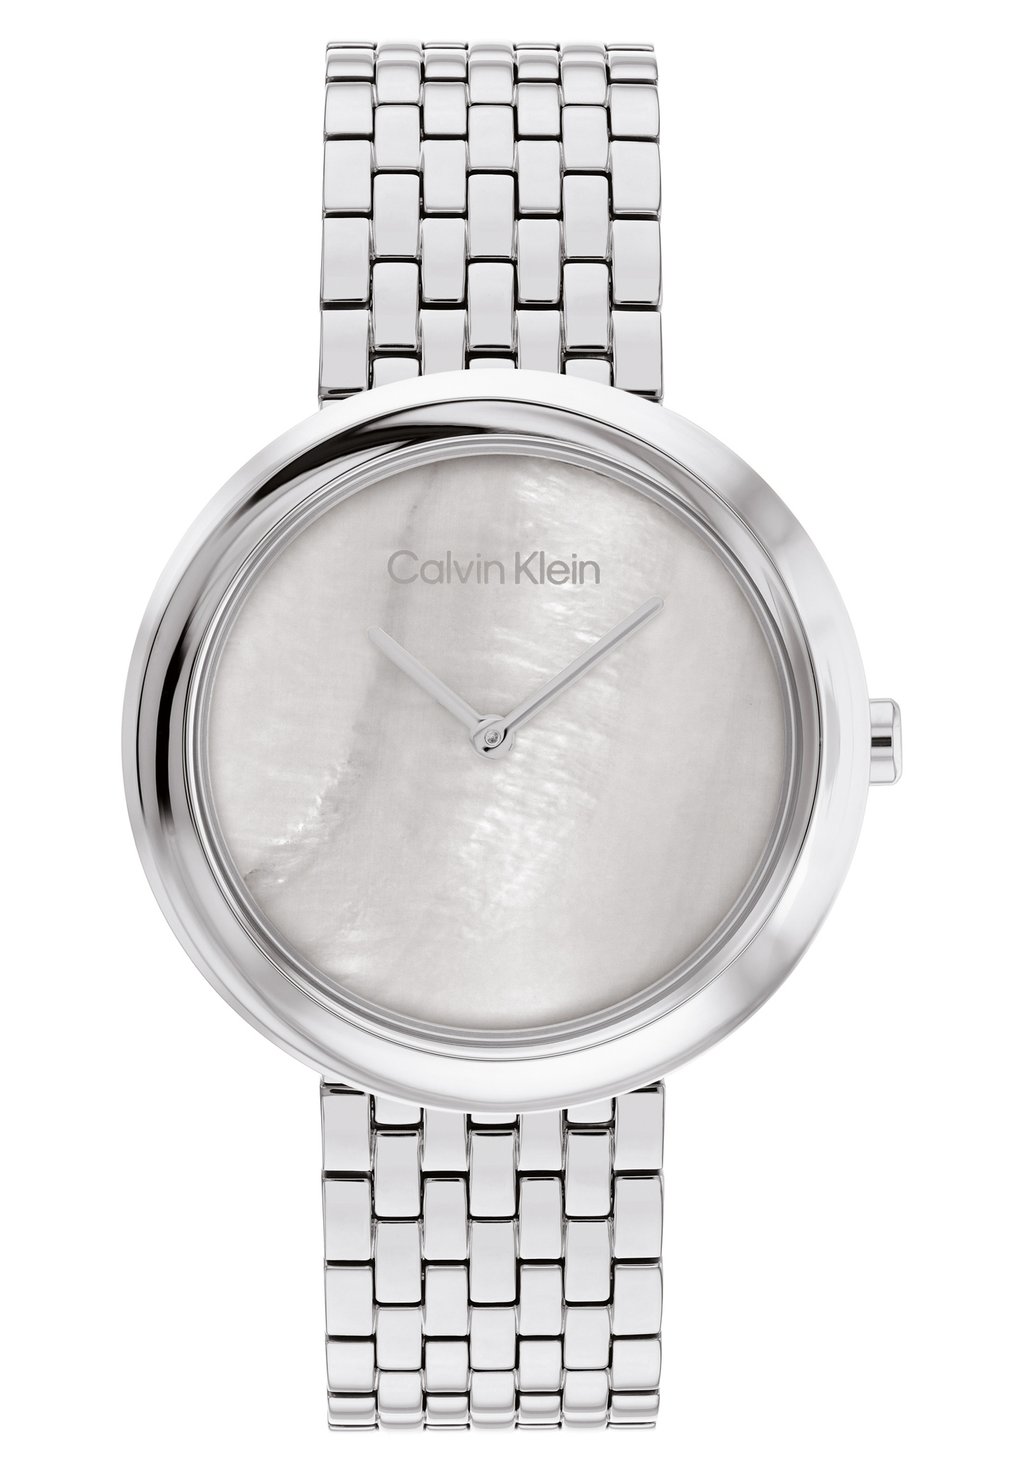 Наручные часы Calvin Klein, серебро серебро серебро серое кроссовки woden nellie ii цвет grau silber